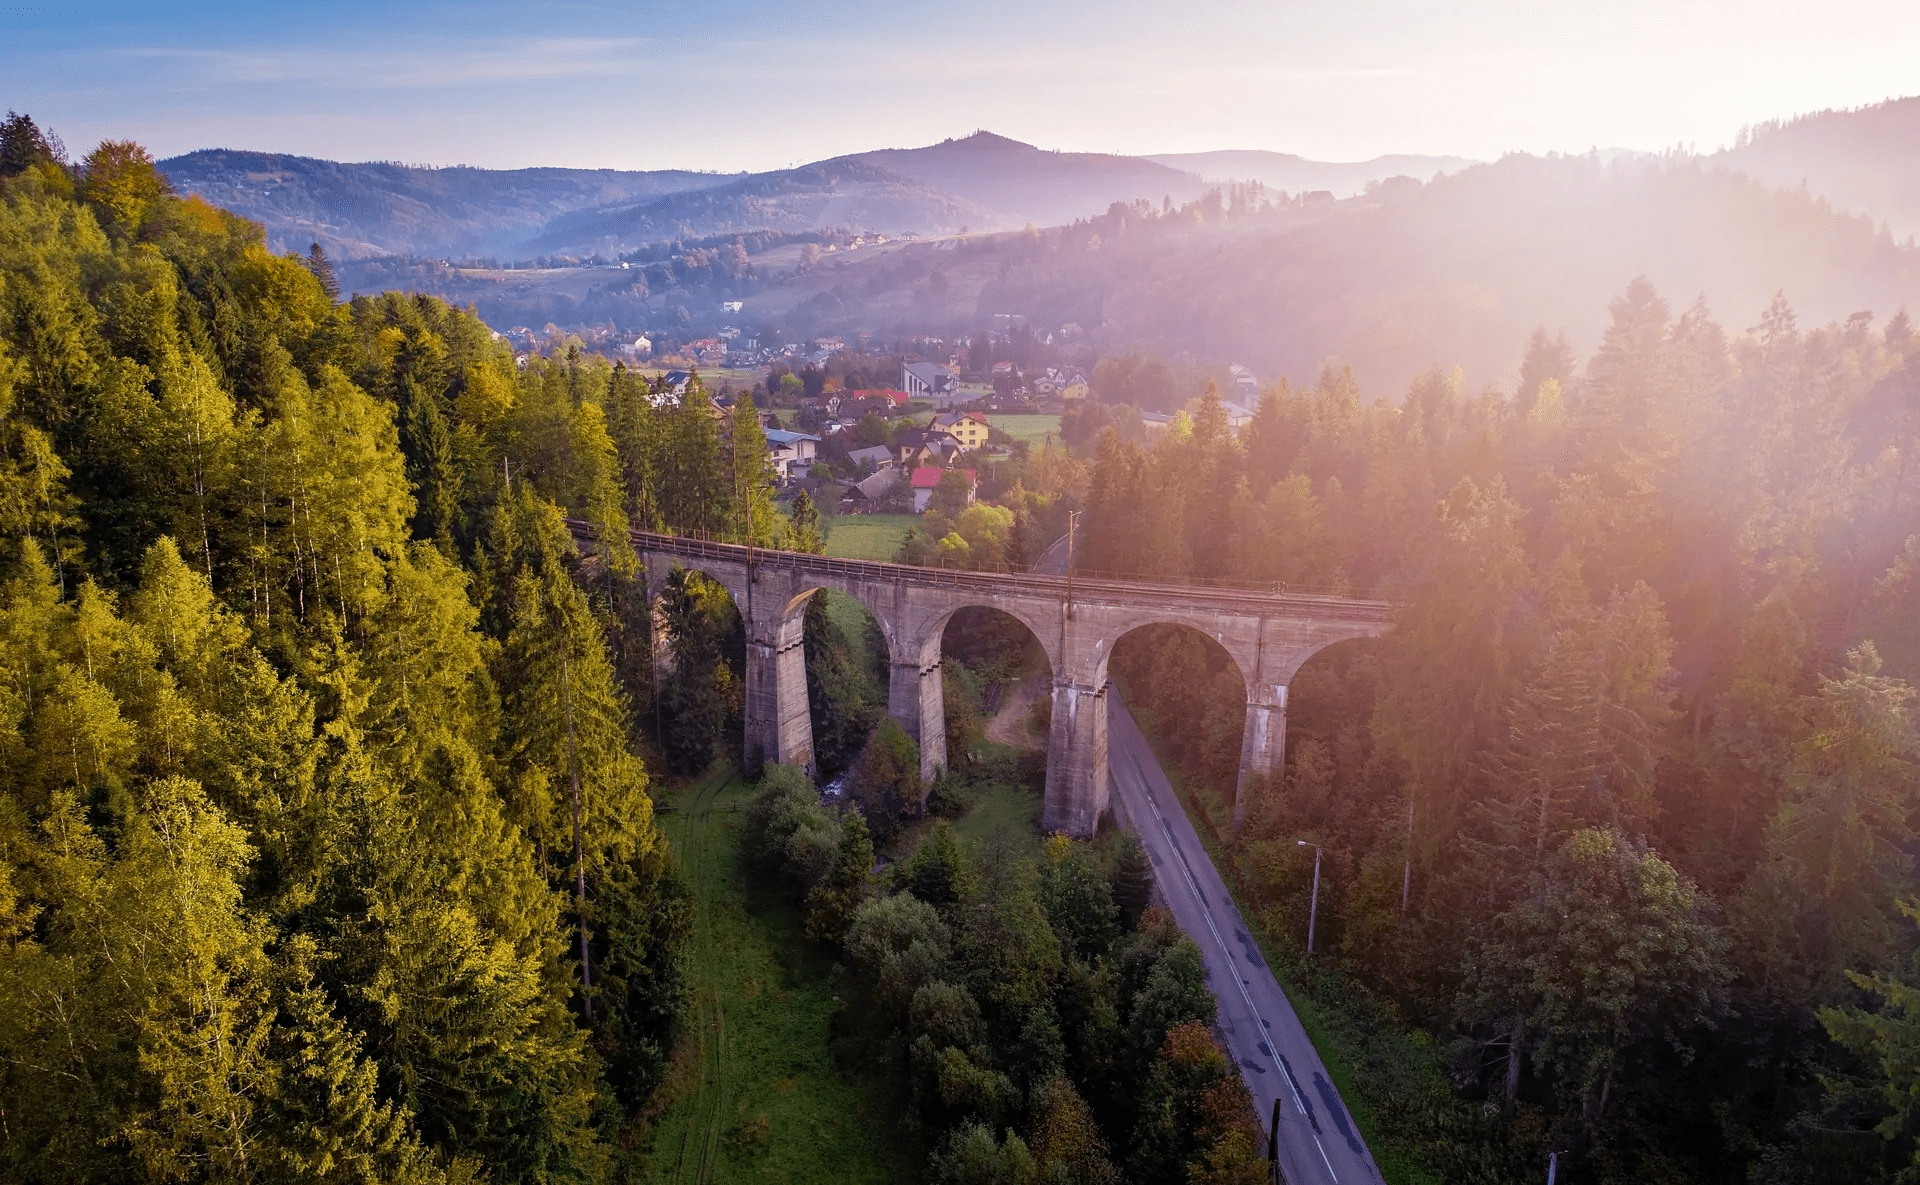 Historia popularnego wiaduktu w Beskidach – 90 lat spektakularnej konstrukcji inżynierskiej